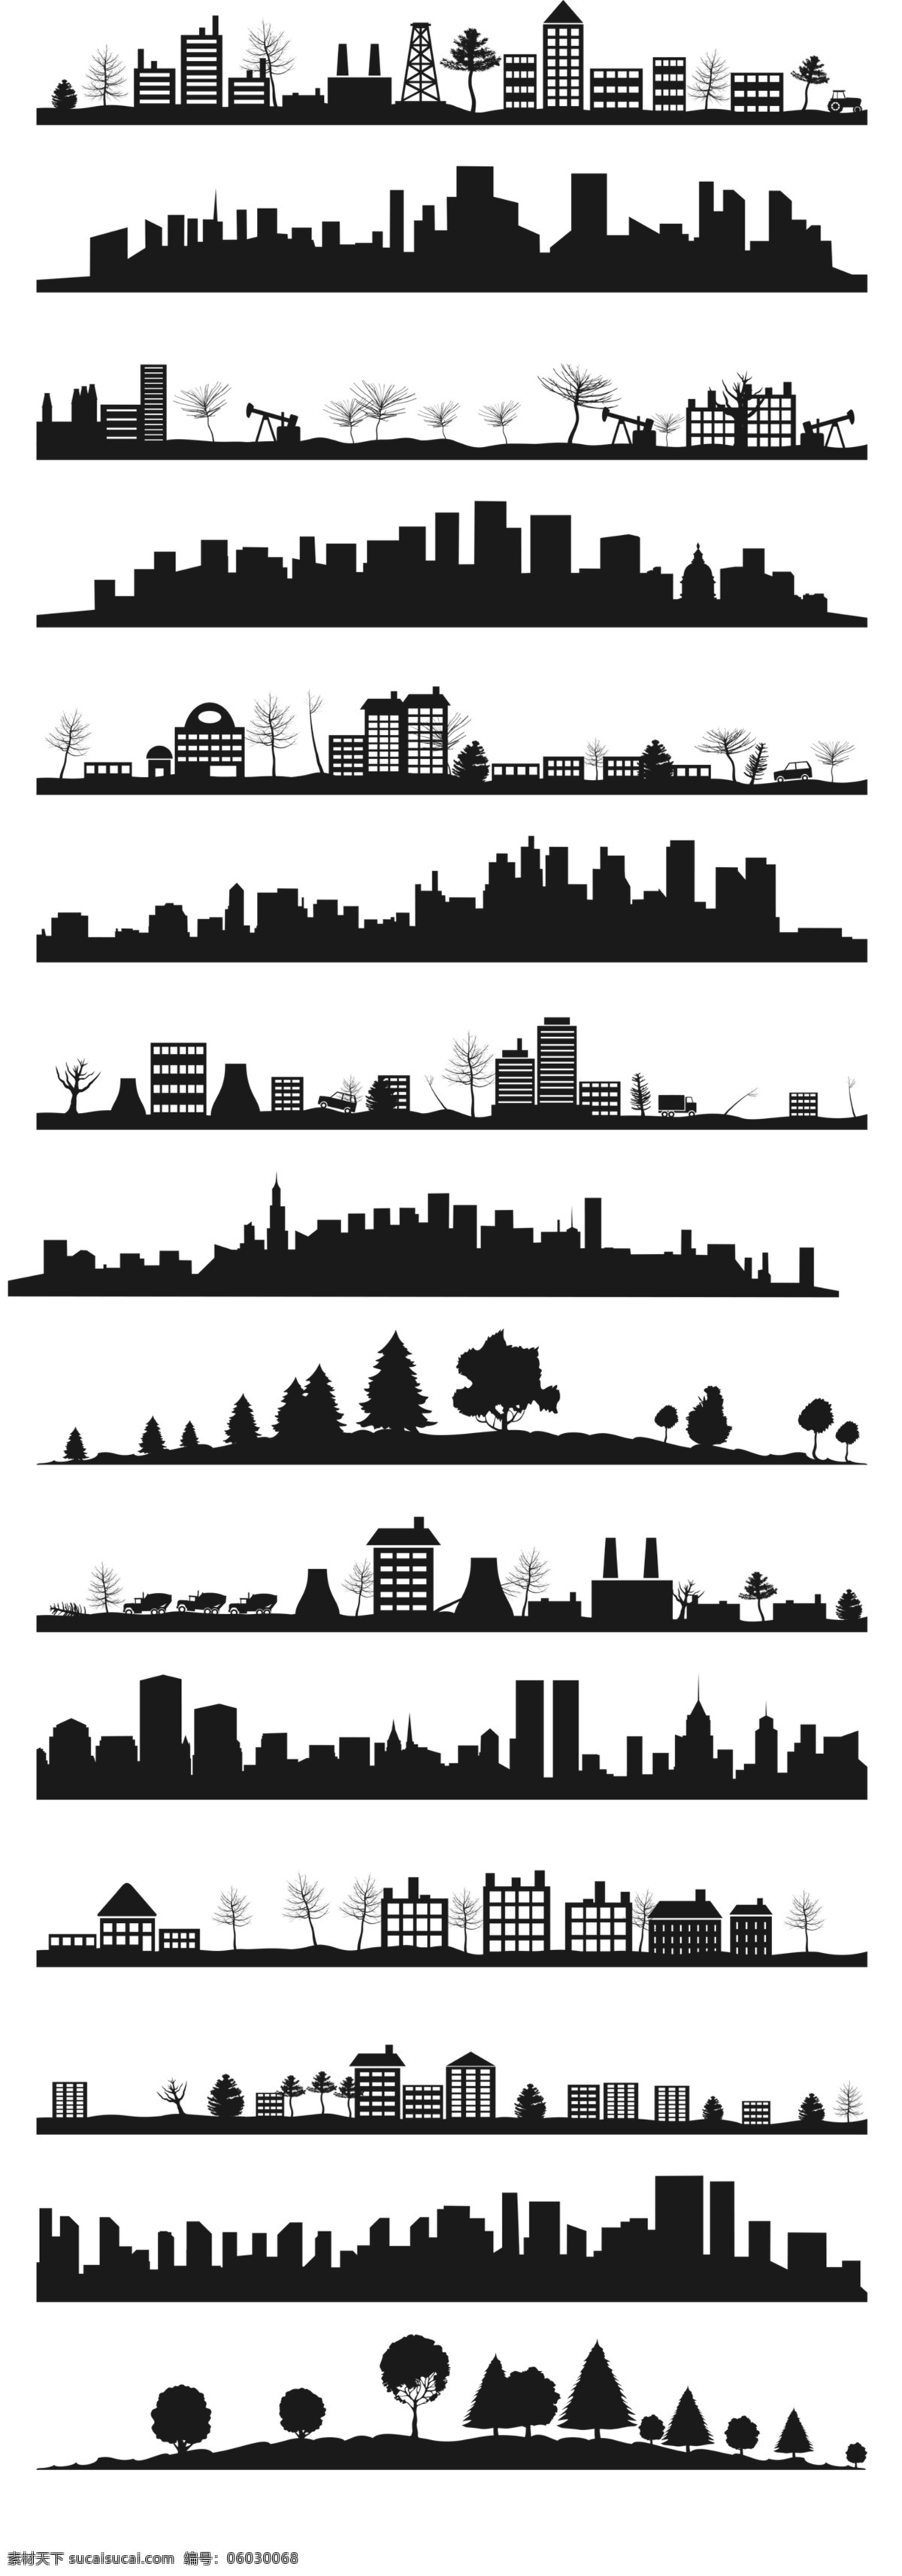 建筑摄影 建筑图片 建筑素材 城市素材 城市图片 城市建筑素材 分层